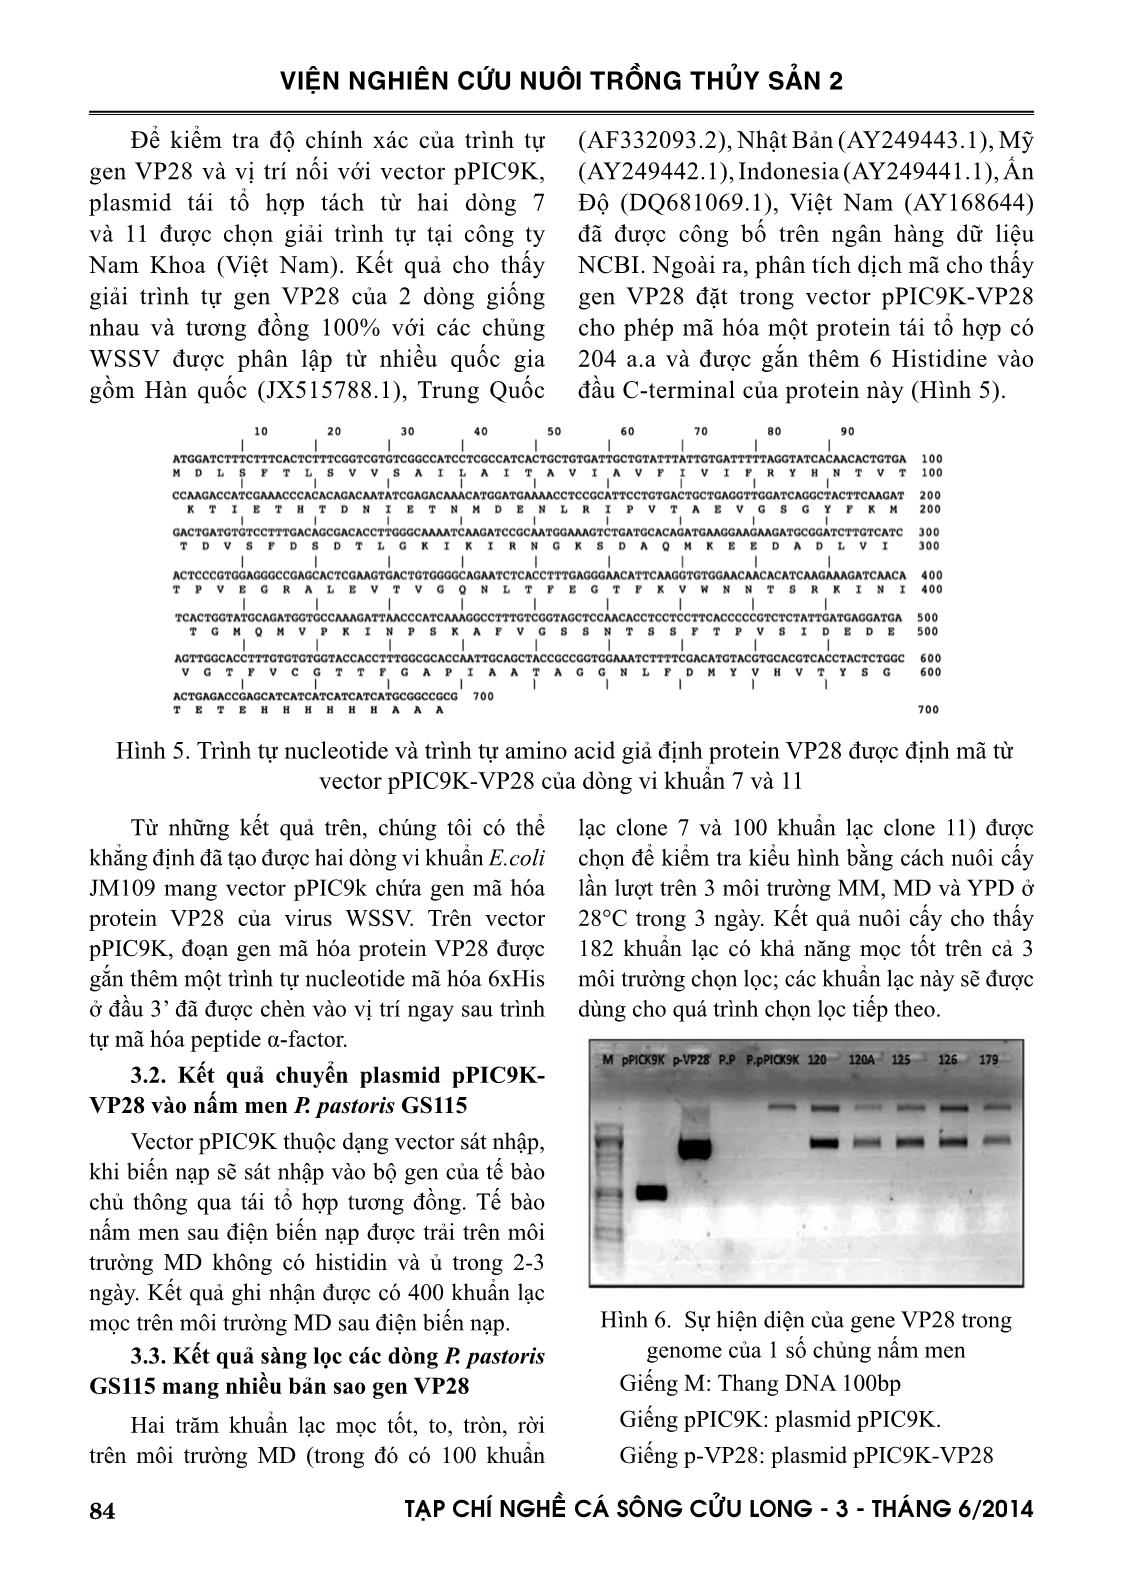 Dòng hóa và biểu hiện gen mã hóa protein vỏ VP28 của virus gây bệnh đốm trắng trong tế bào nấm men Pichchia pastoris trang 6